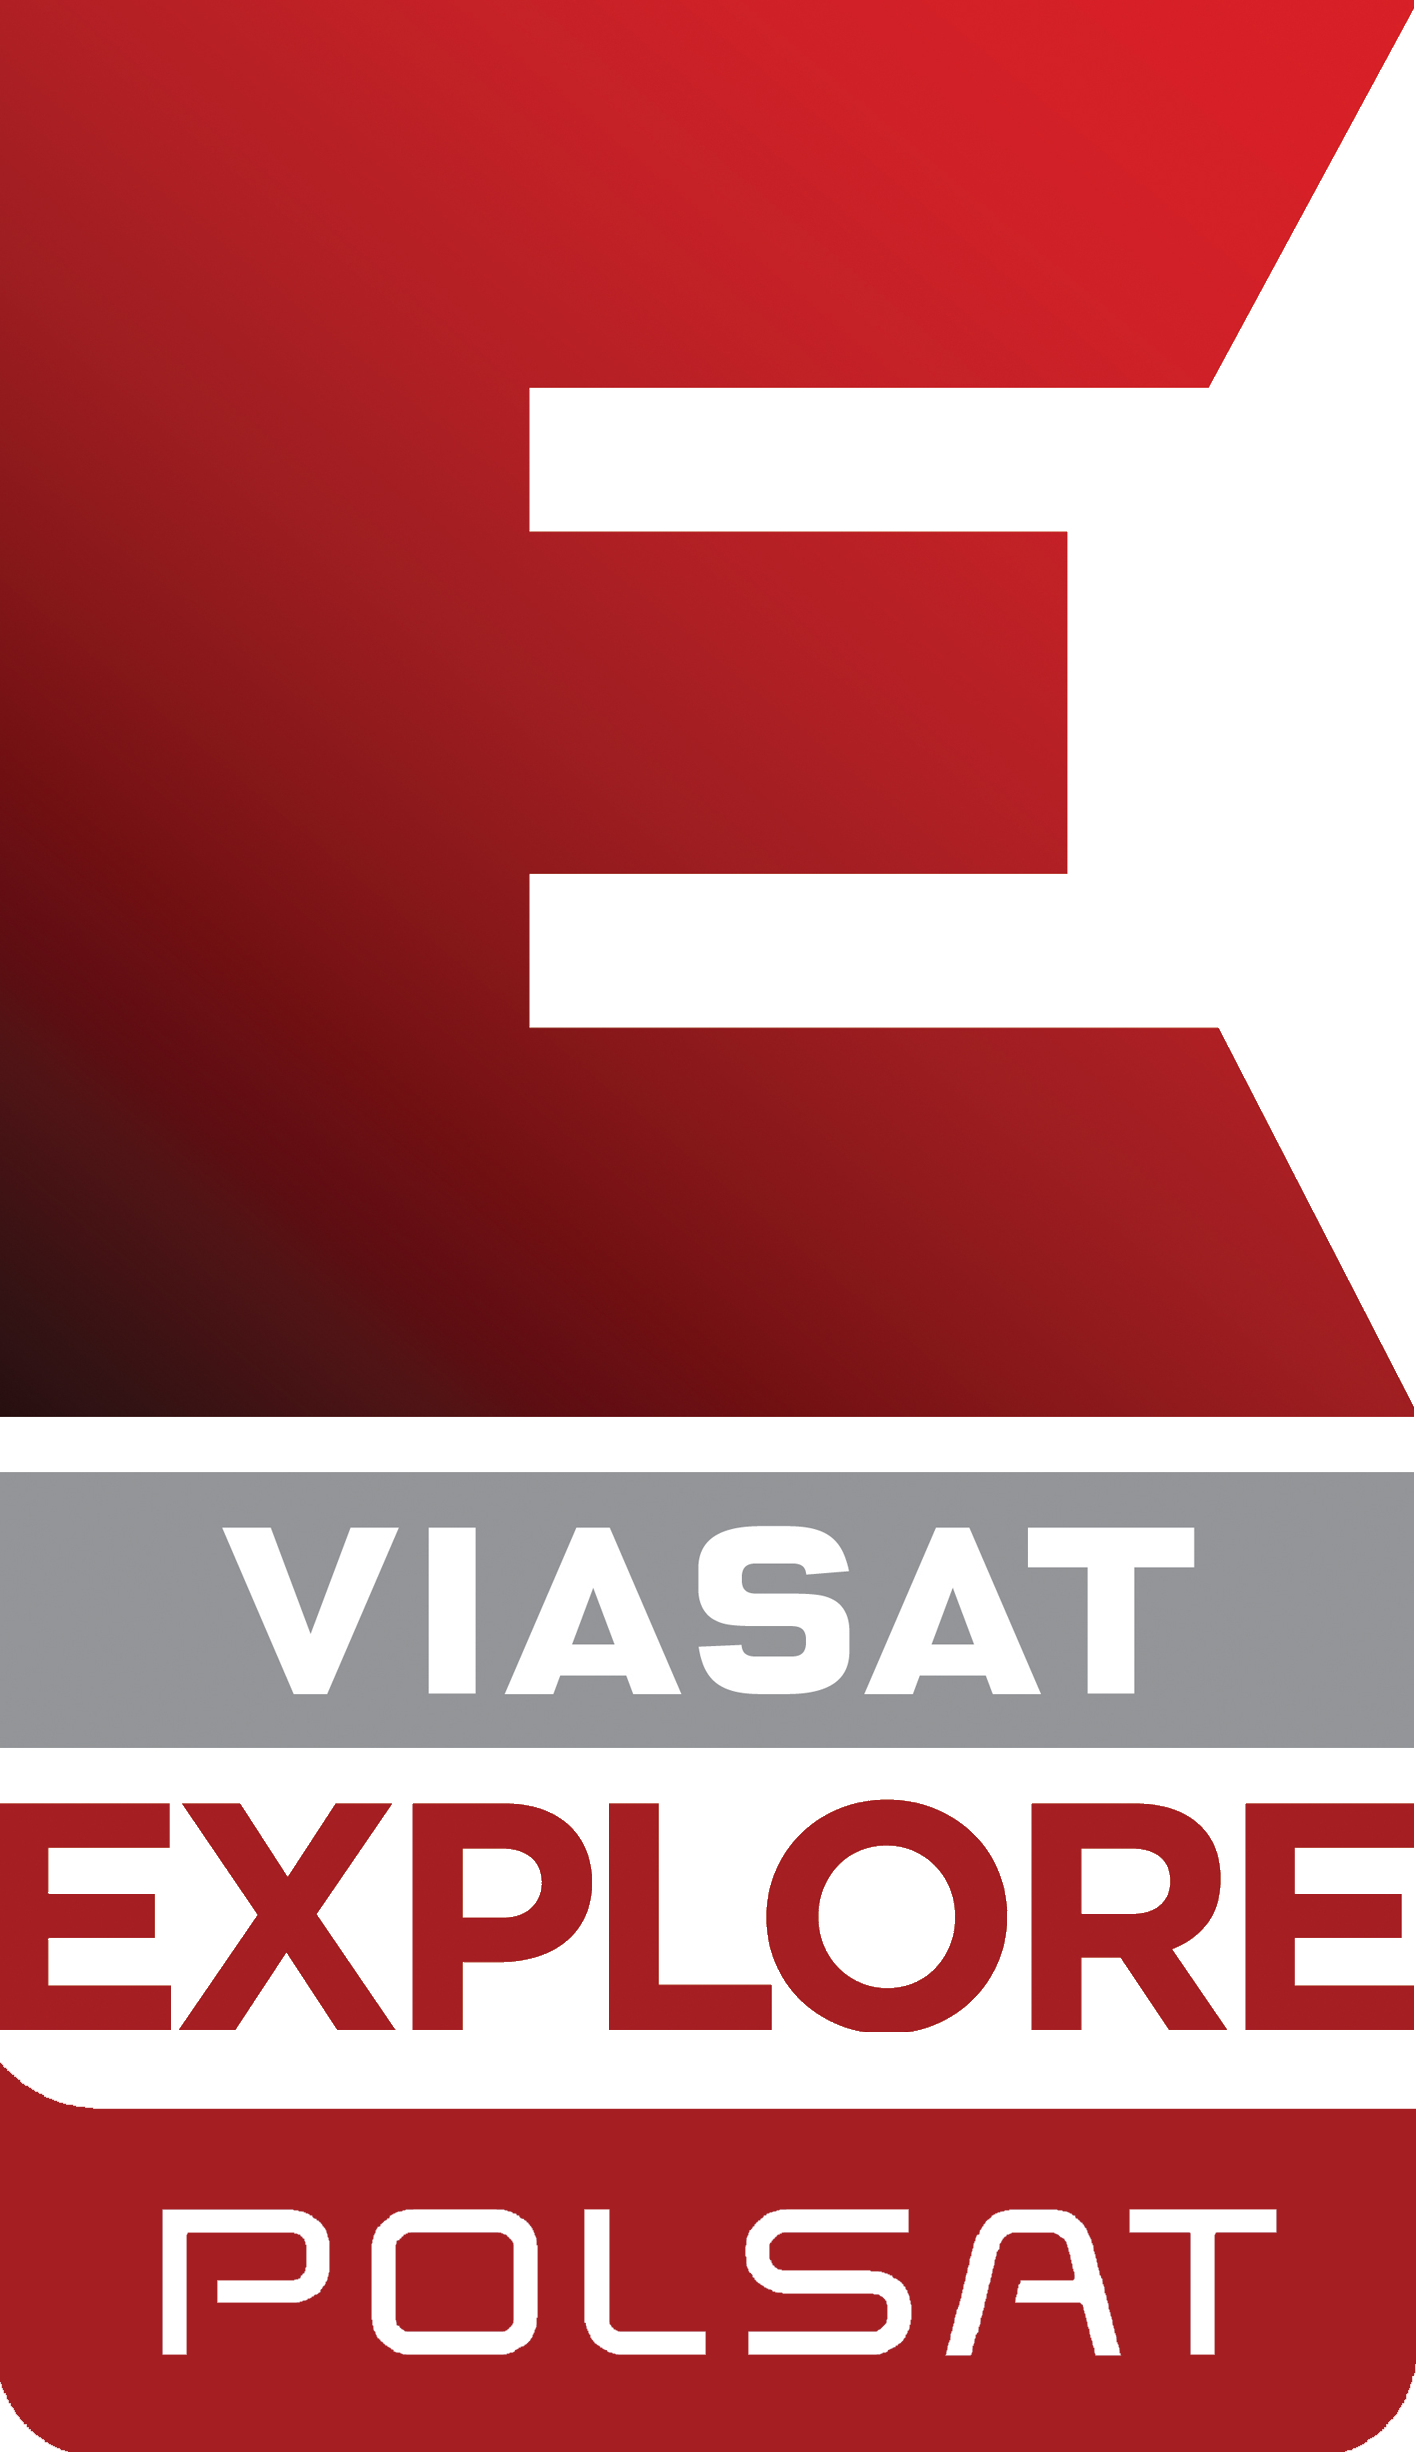 Polsat Viasat Mihsign Vision | Fandom